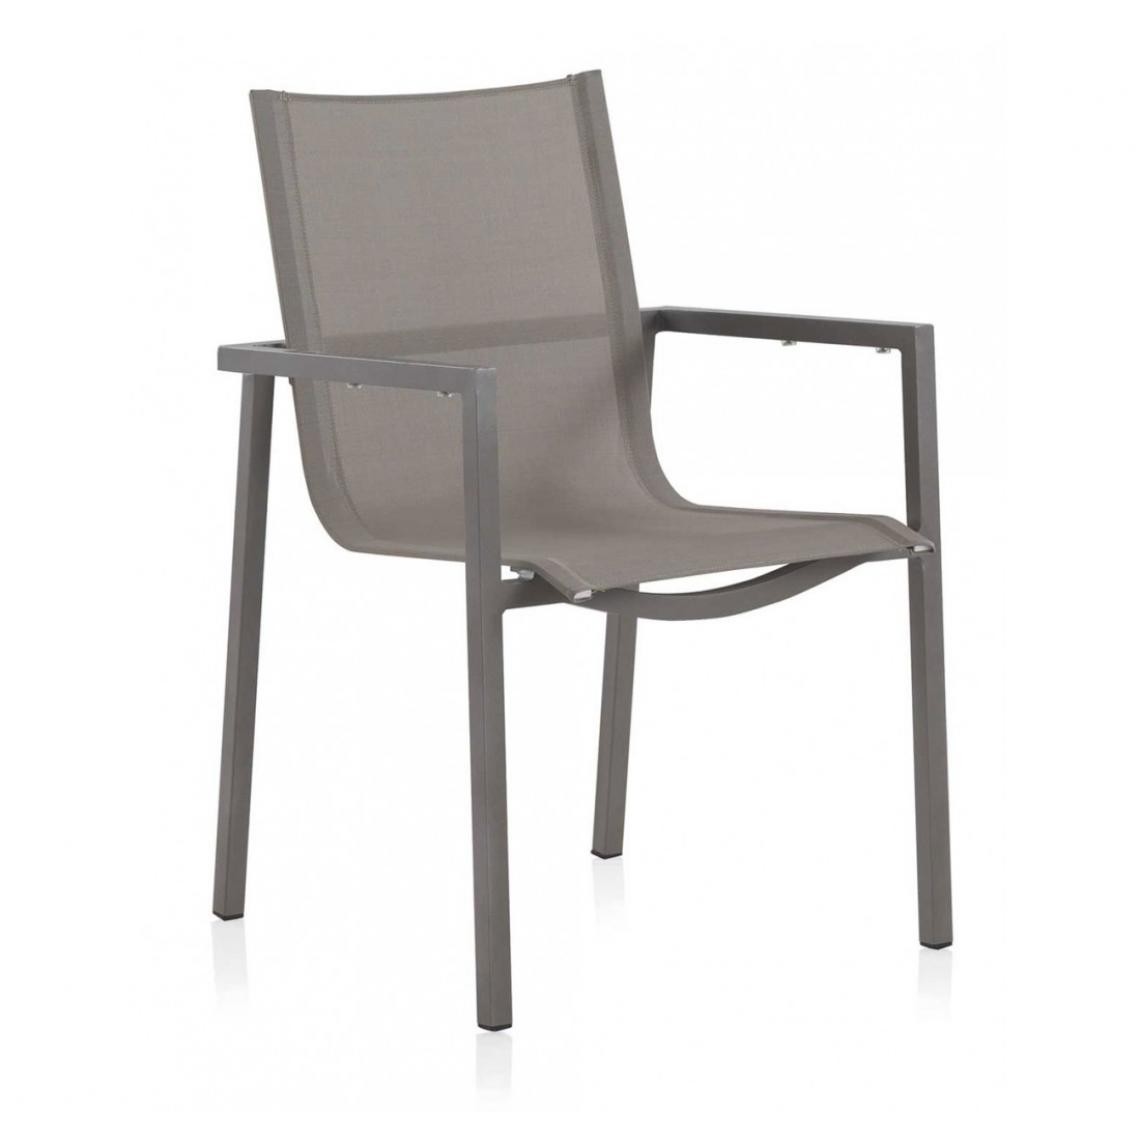 Pegane - Lot de 6 Chaises de jardin, fauteuils en Aluminium coloris Gris foncé - Longueur 61 x Hauteur 86 x Largeur 57 cm - Chaises de jardin